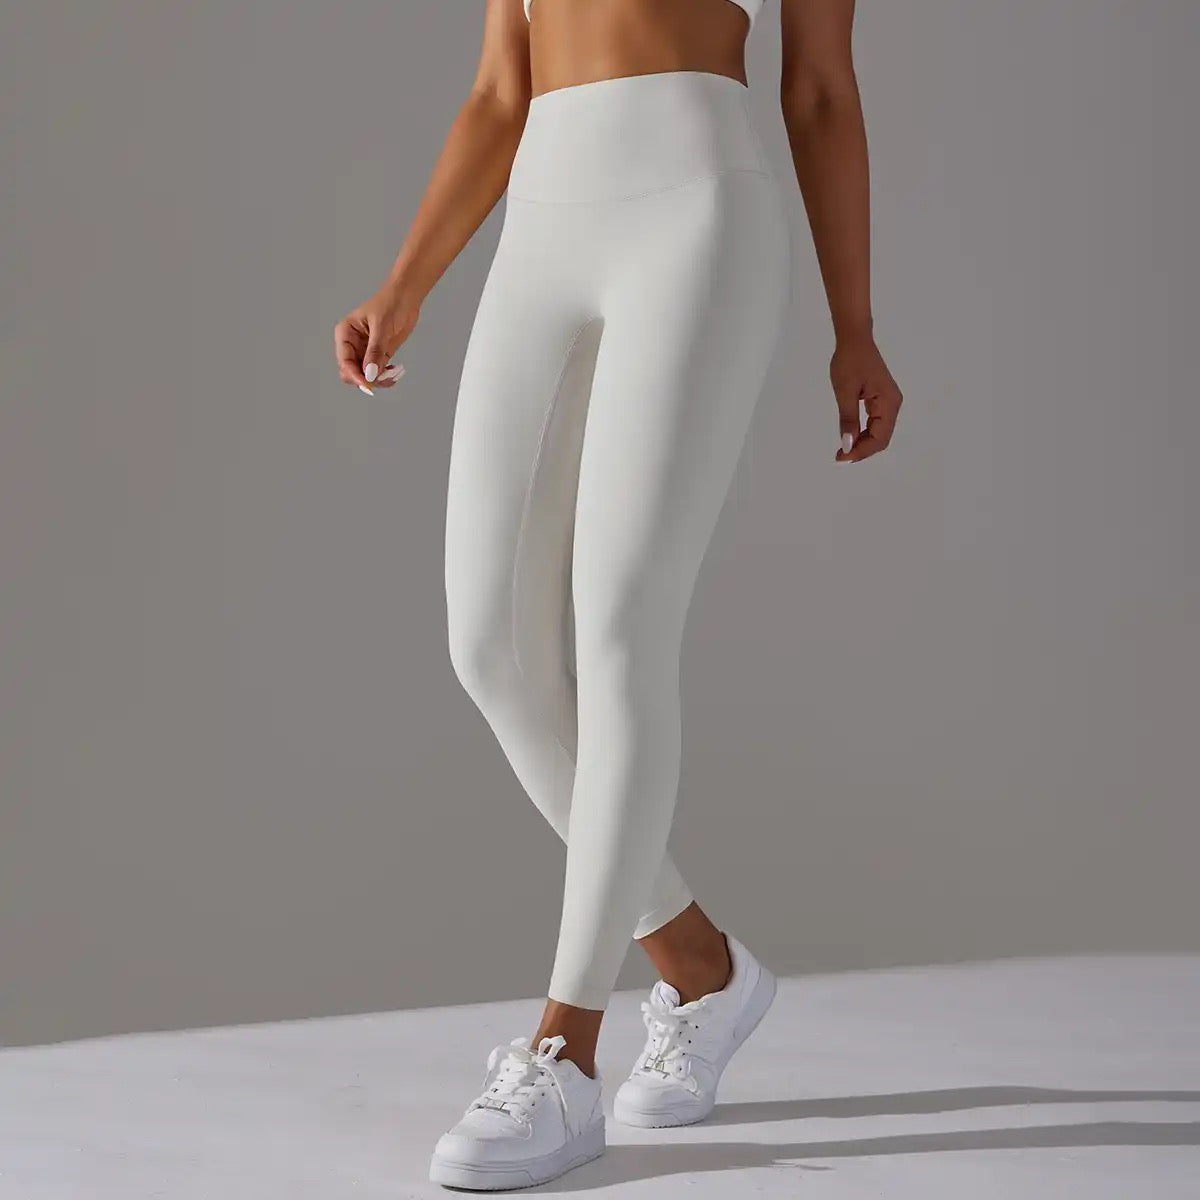 white sports leggings